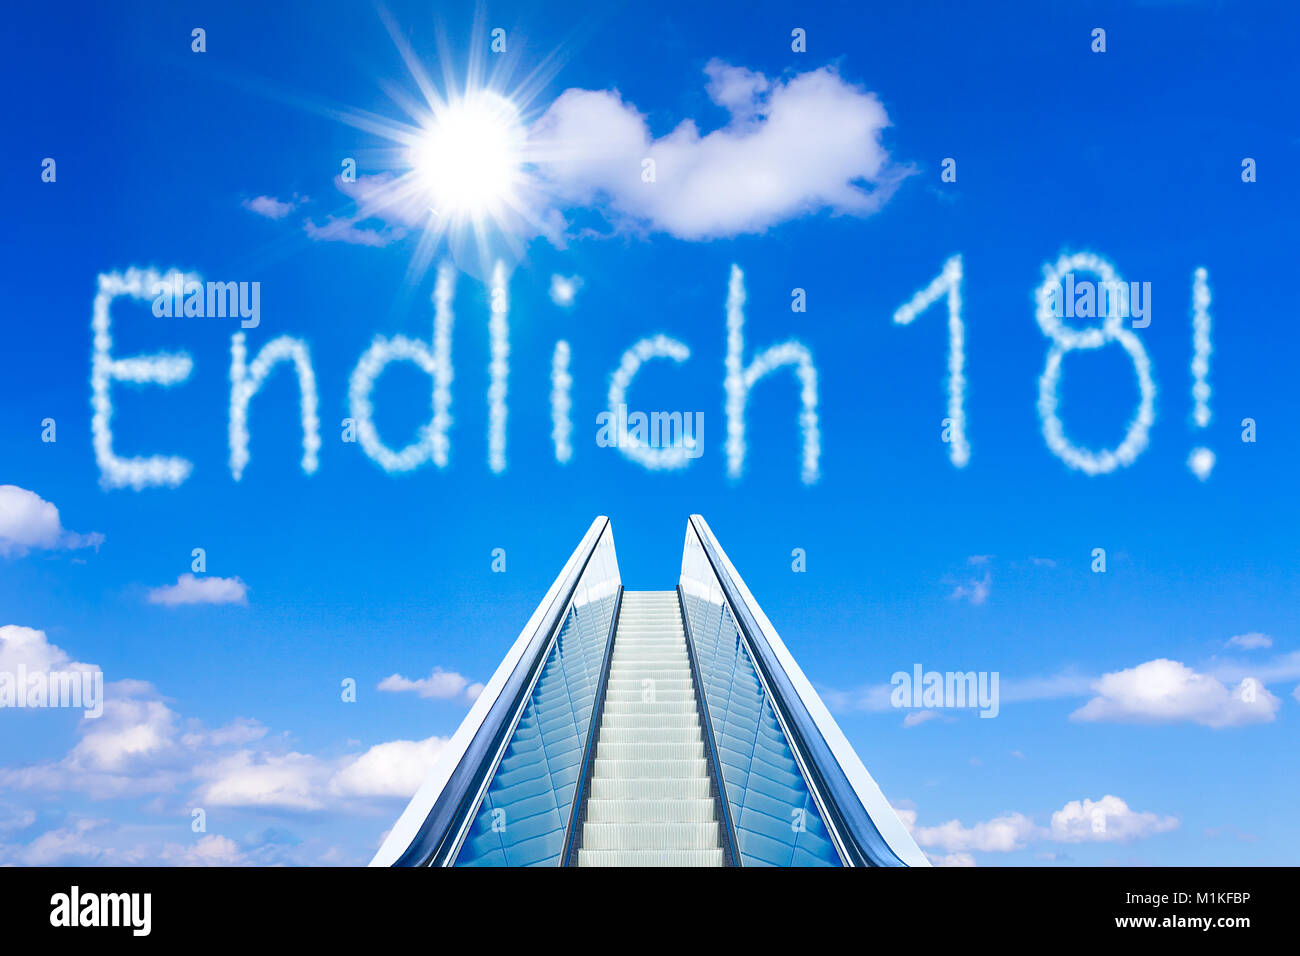 Rolltreppe in einem blauen Himmel, Konzept der Leistung, endlich 18 deutsche Text, d. h. Schließlich 18, Erwachsensein und Freiheit Stockfoto